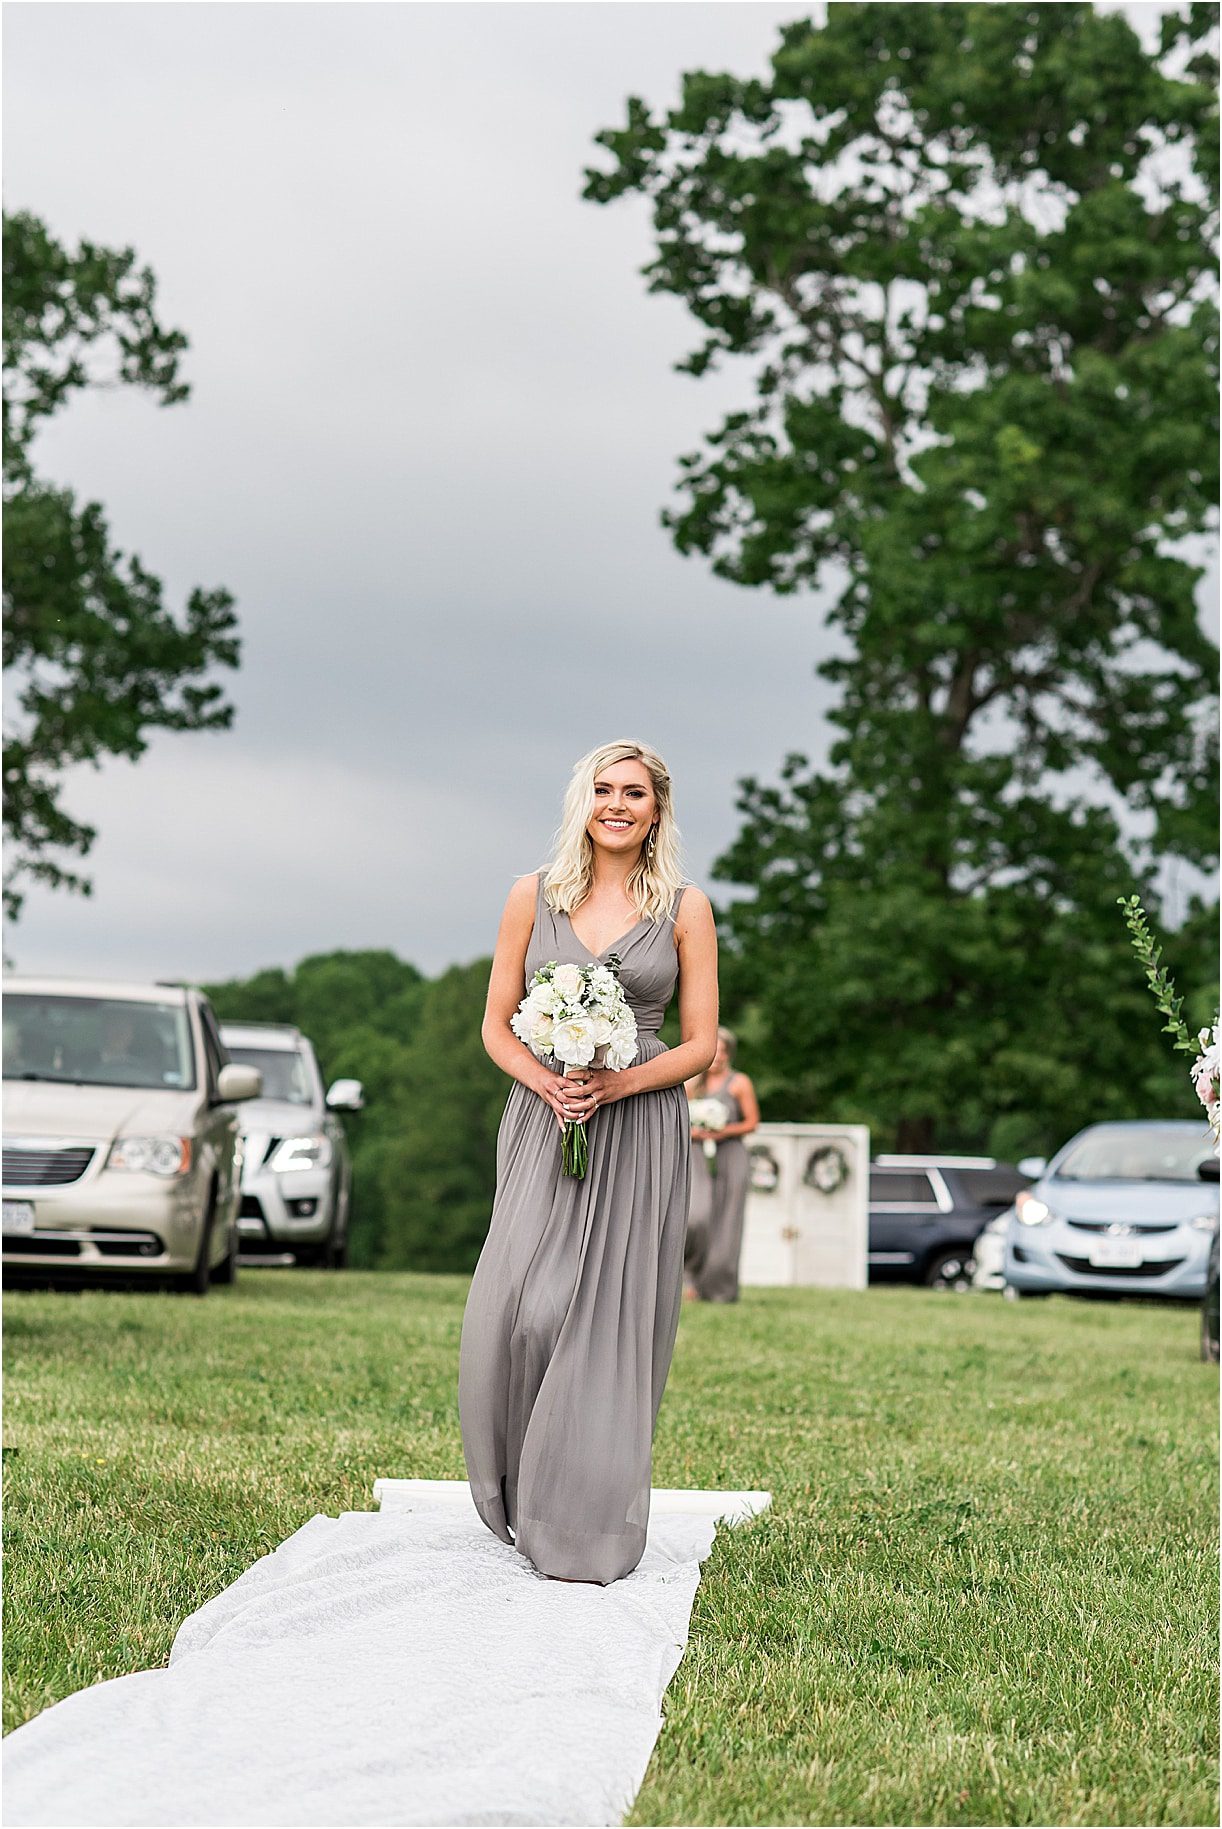 Bridesmaid Aisle | Drive In Wedding Ideas | COVID Wedding Ceremony Ideas | Hill City Bride Virginia Weddings